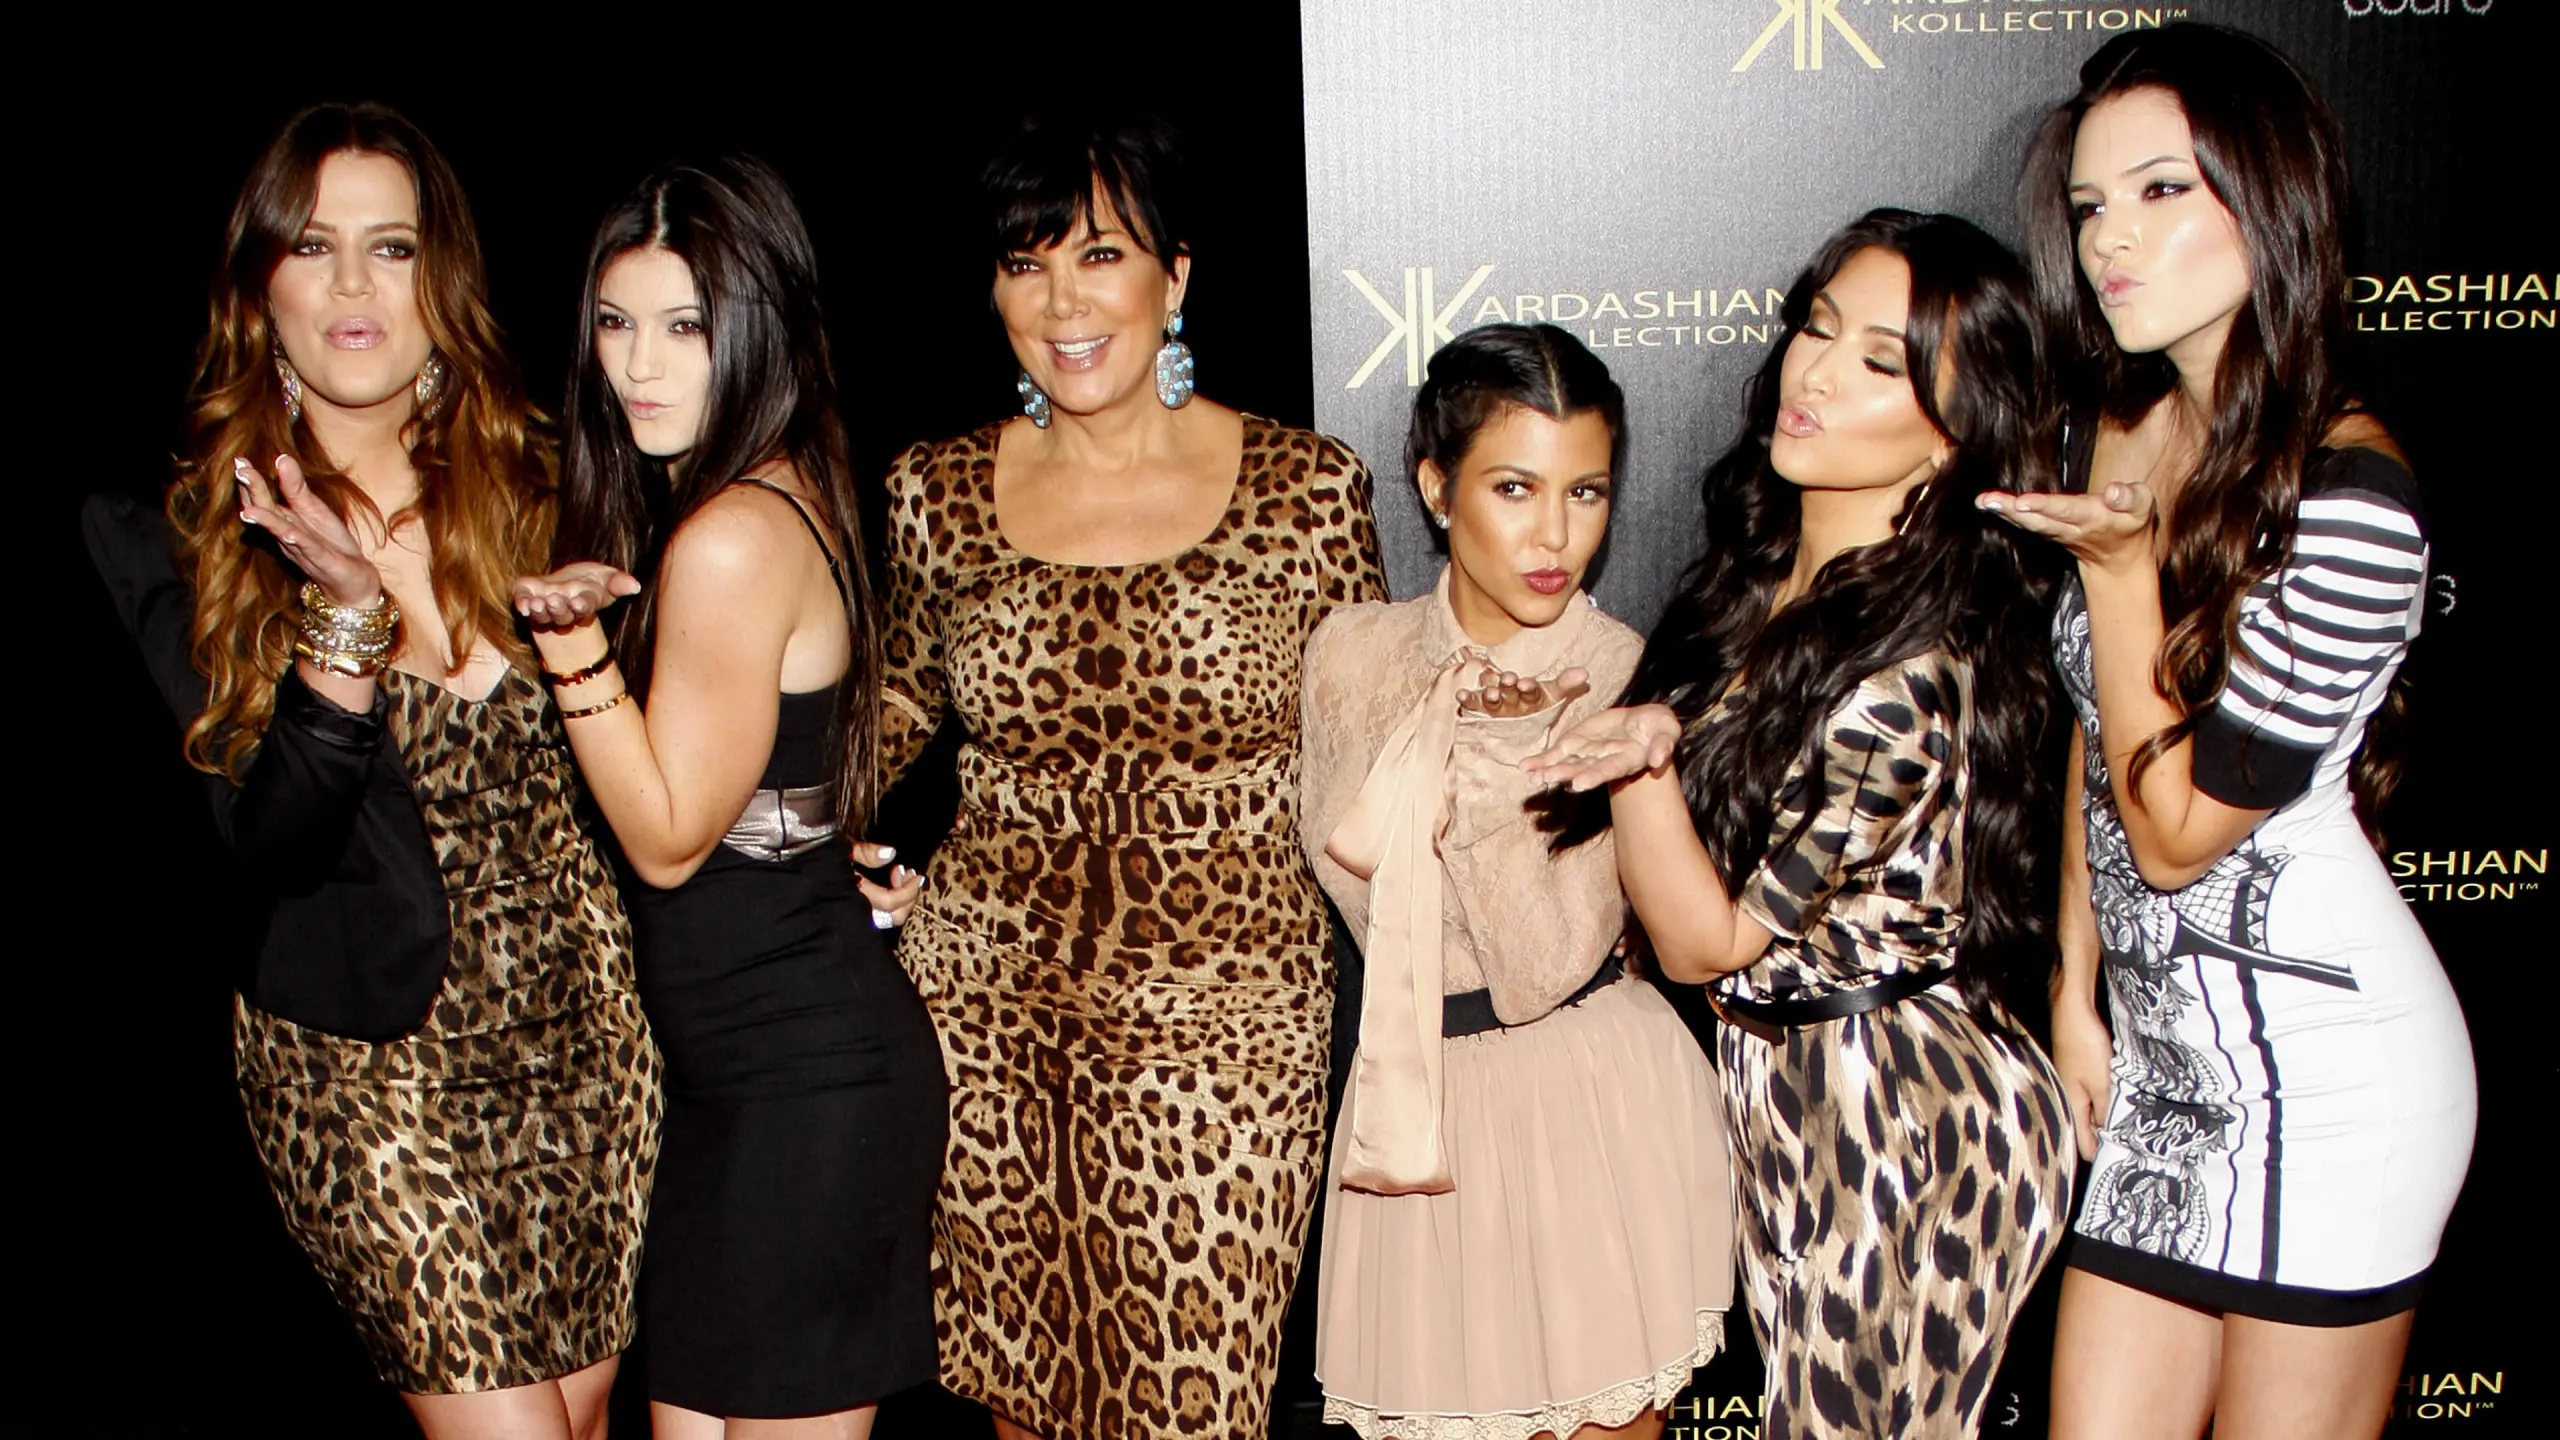 Kardashian Familie: Kim, Kourtney, Khloé, Kendall und Kylie im großen Portrait